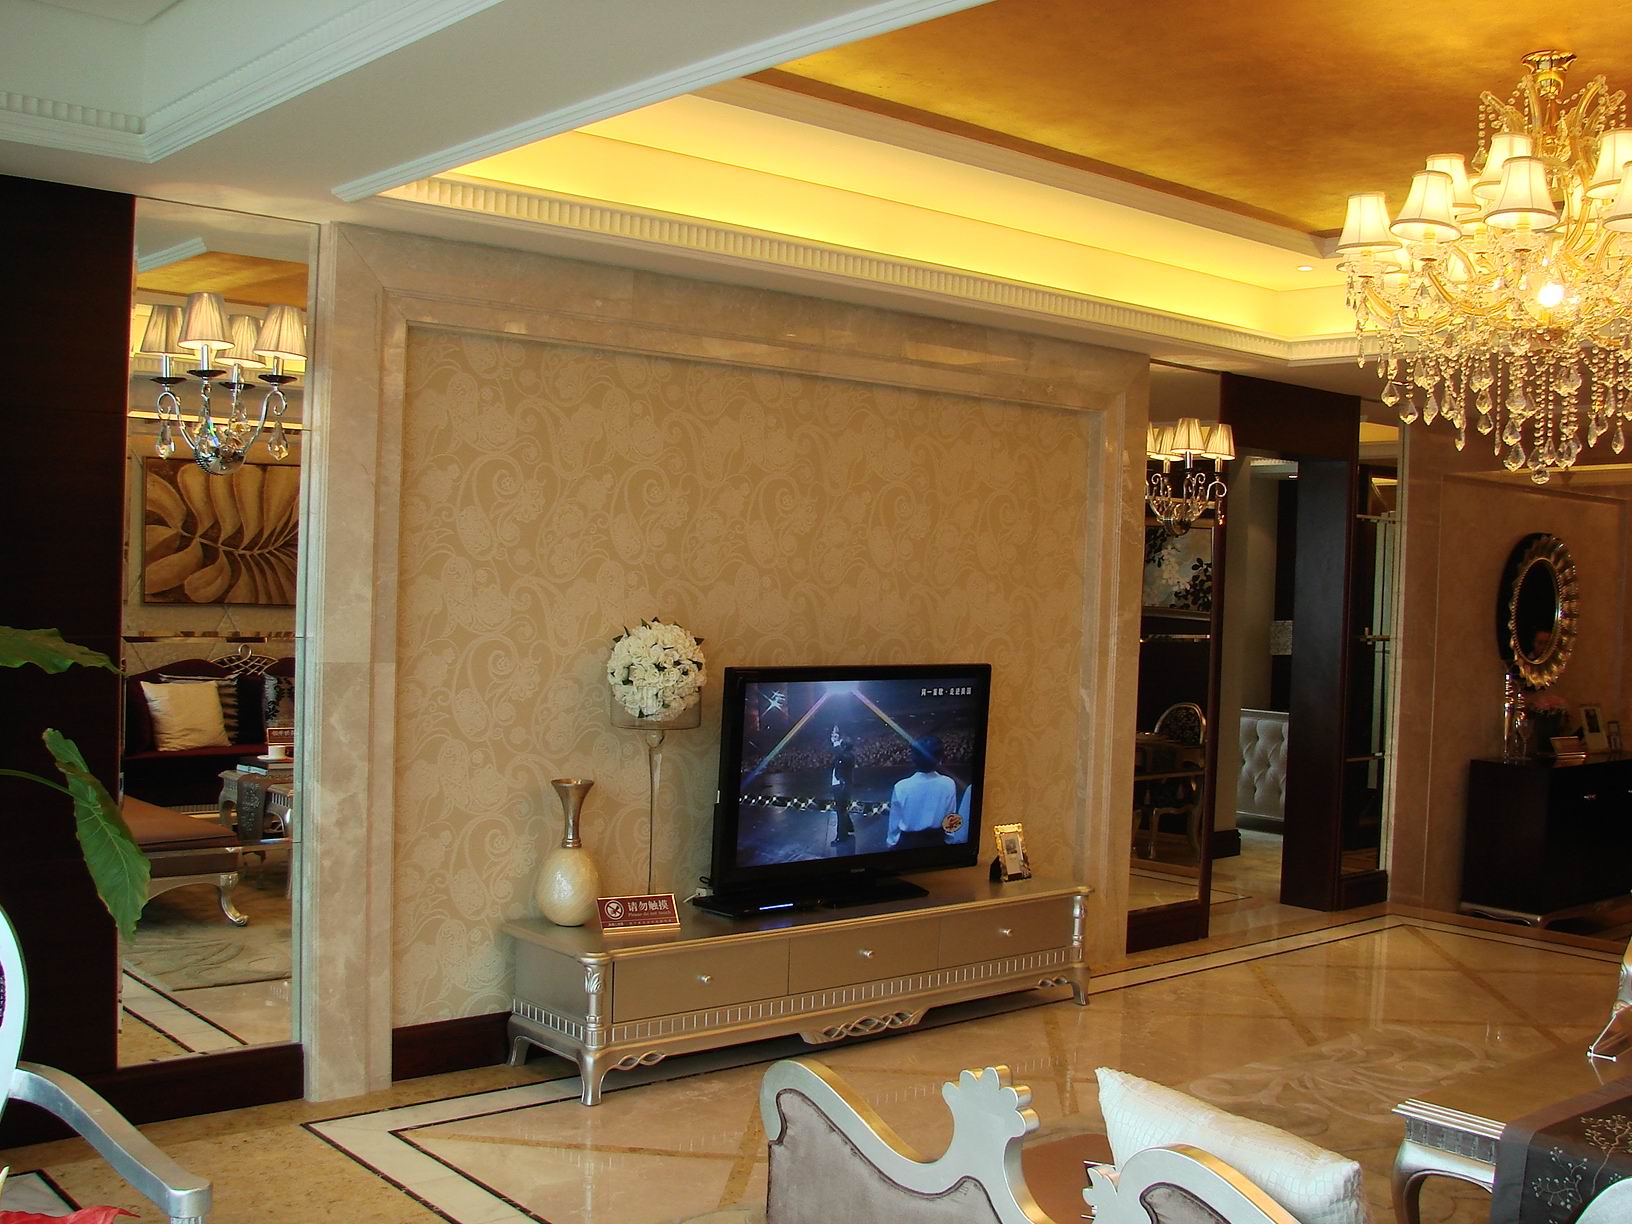 欧式 四室两厅 四居 欧式样板间 客厅图片来自超凡装饰季国华在典雅大气欧式风格样板间的分享